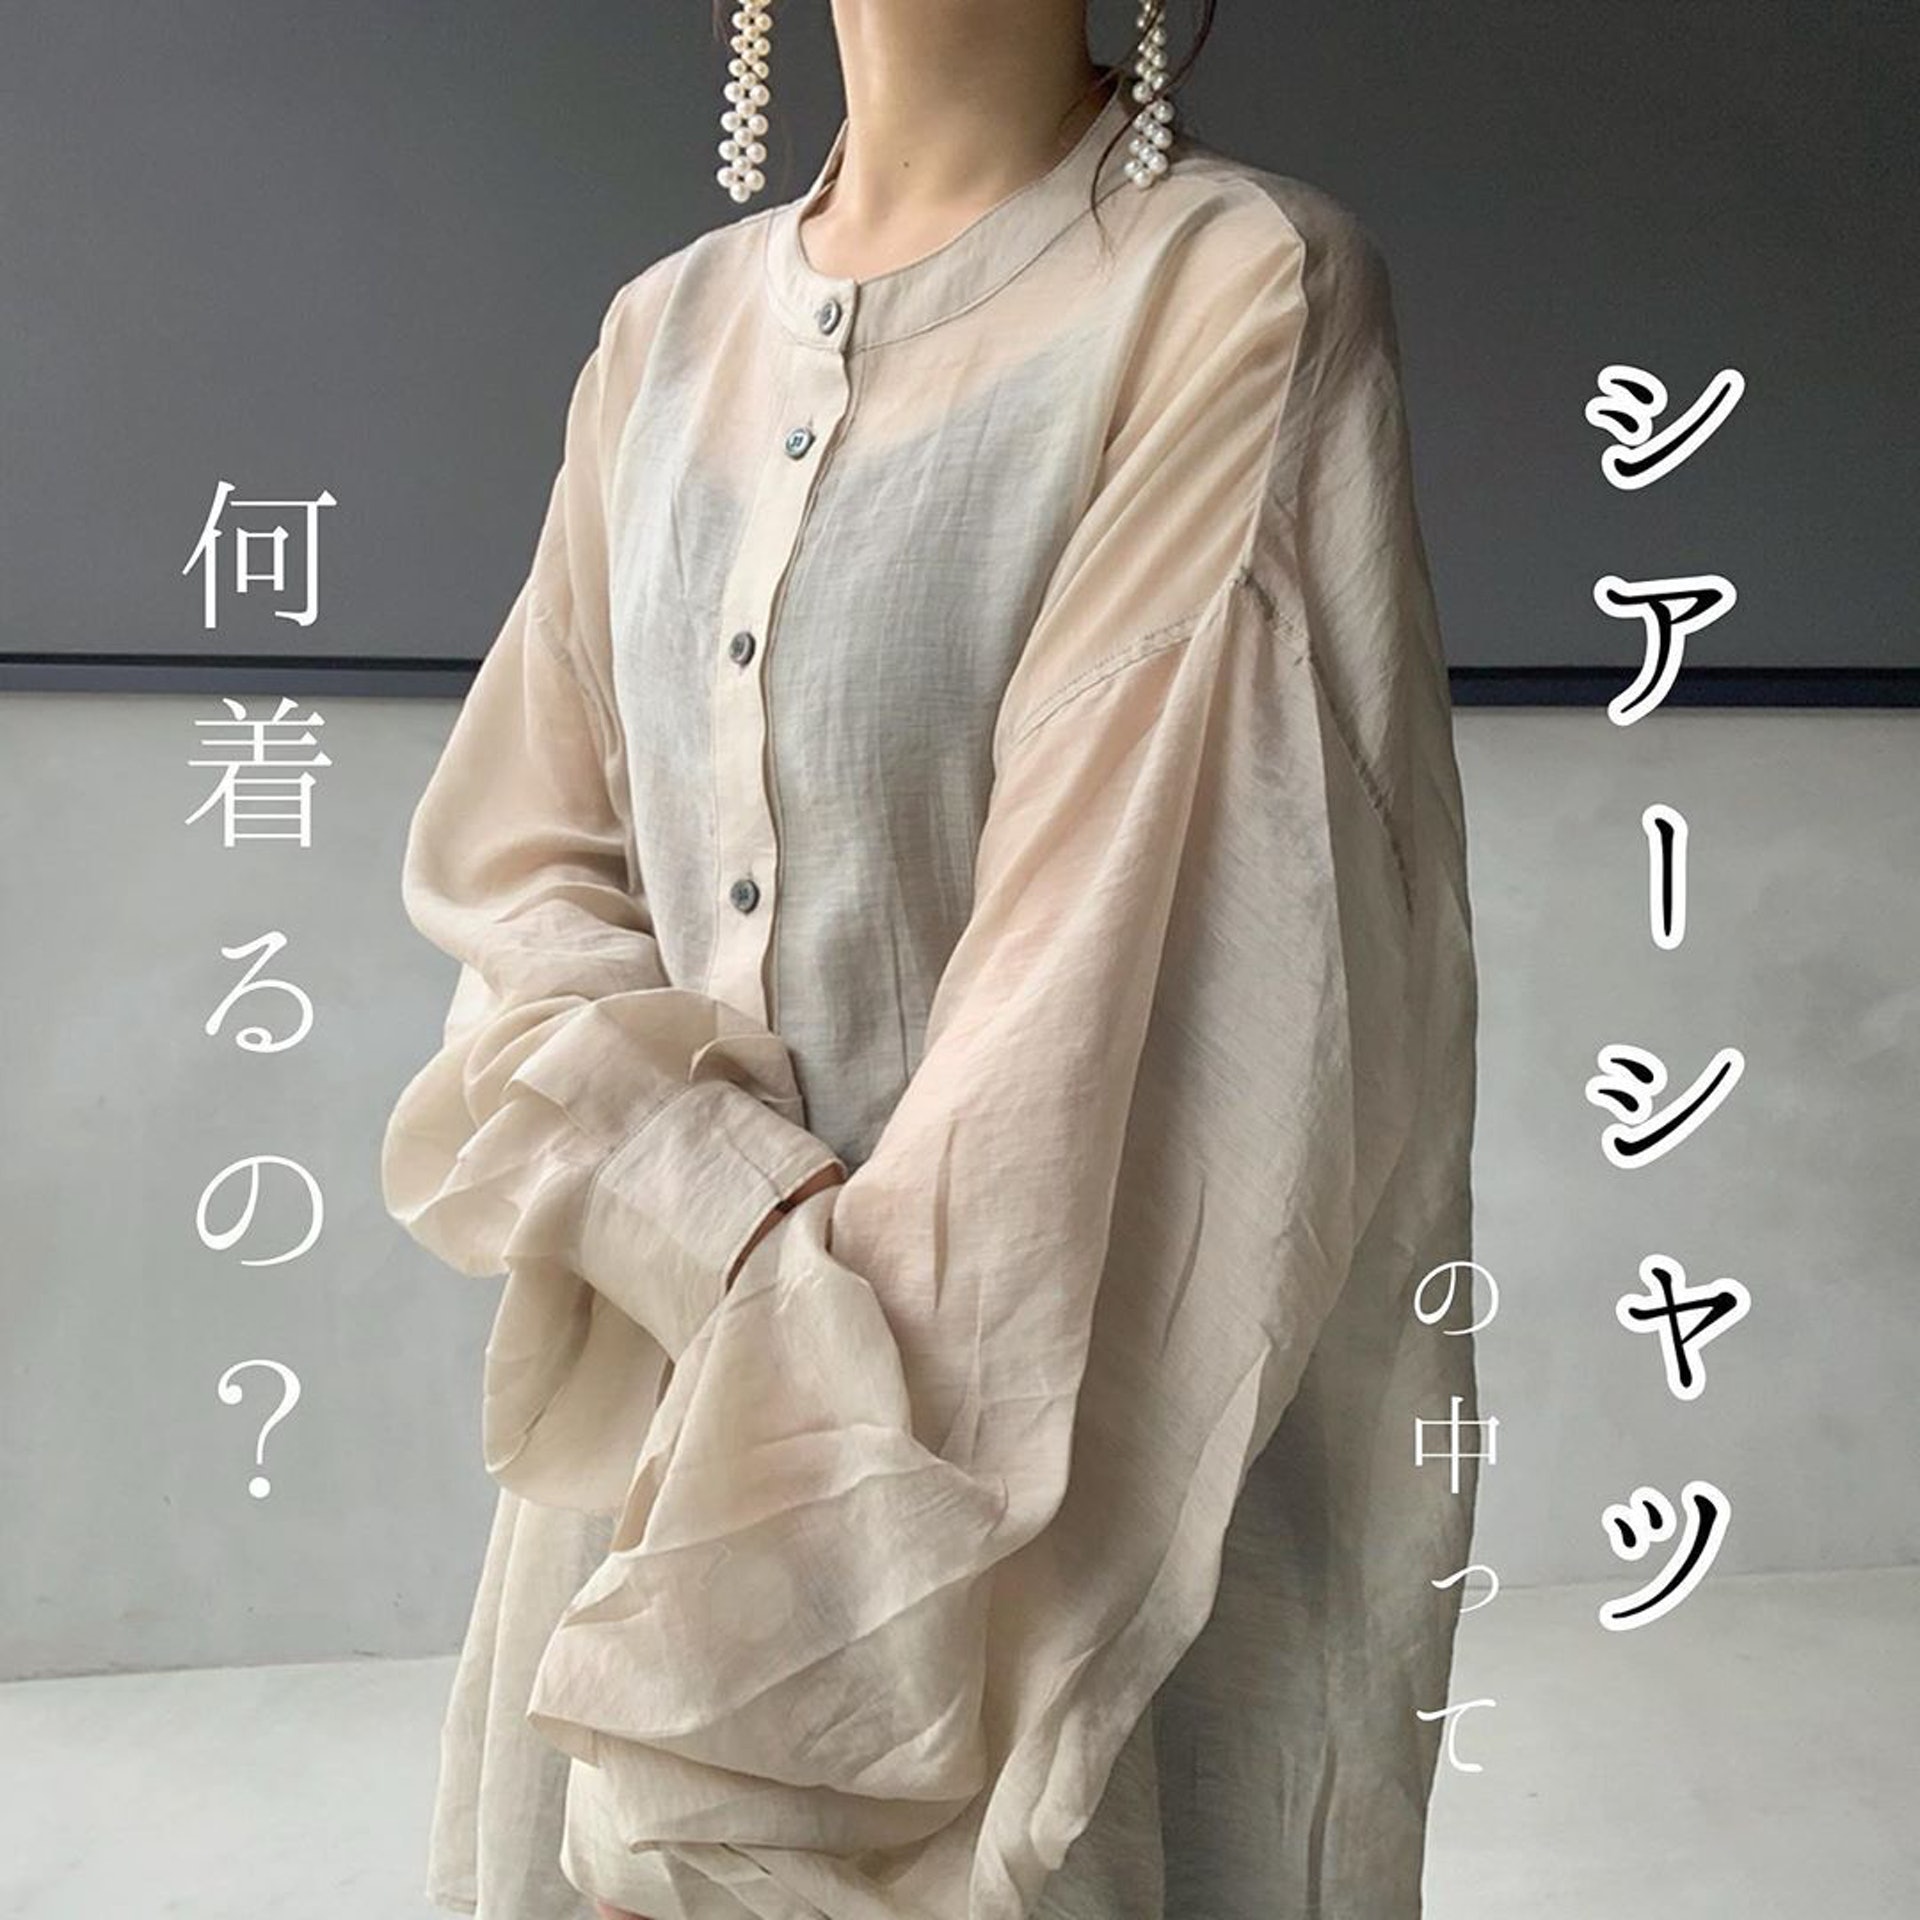 【MUJI無印良品風格穿搭】日本女生hyororii_69不時分享戰利品。(hyororii_69@Instagram)